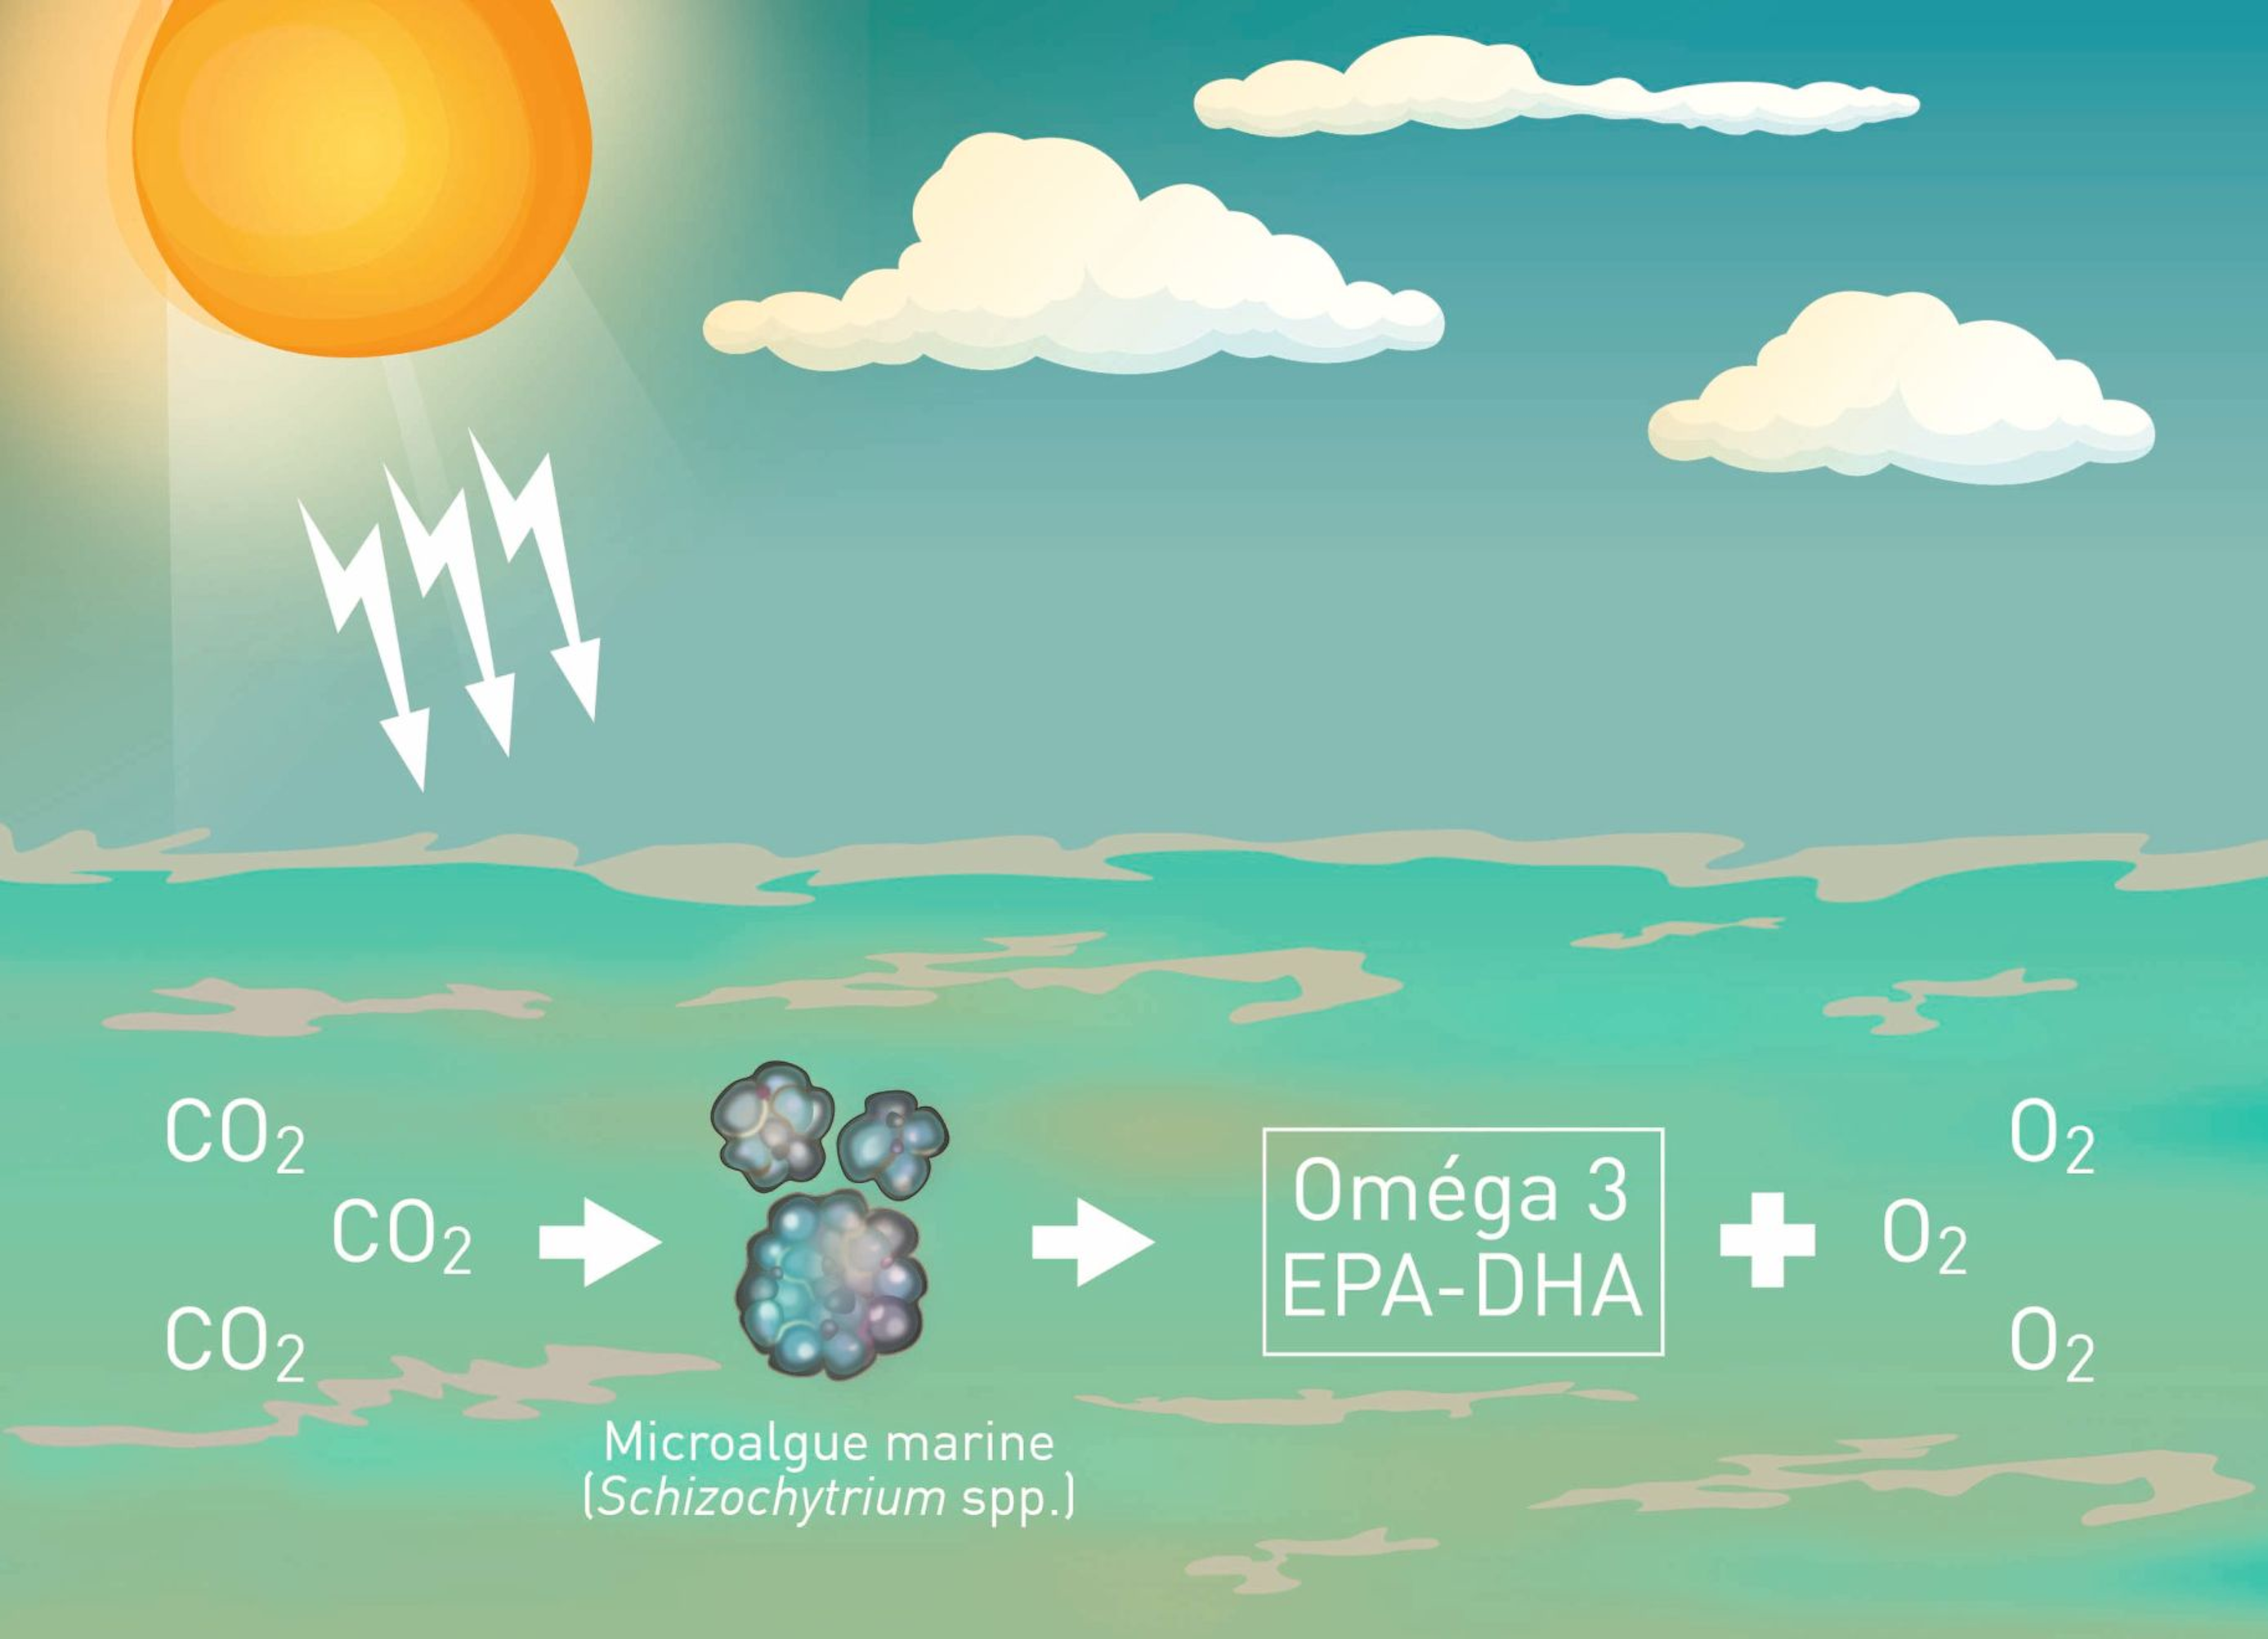 Les algues marines telles que les espèces de Schizochytrium produisent naturellement des acides gras oméga 3 EPA et DHA en utilisant l’énergie de la lumière solaire